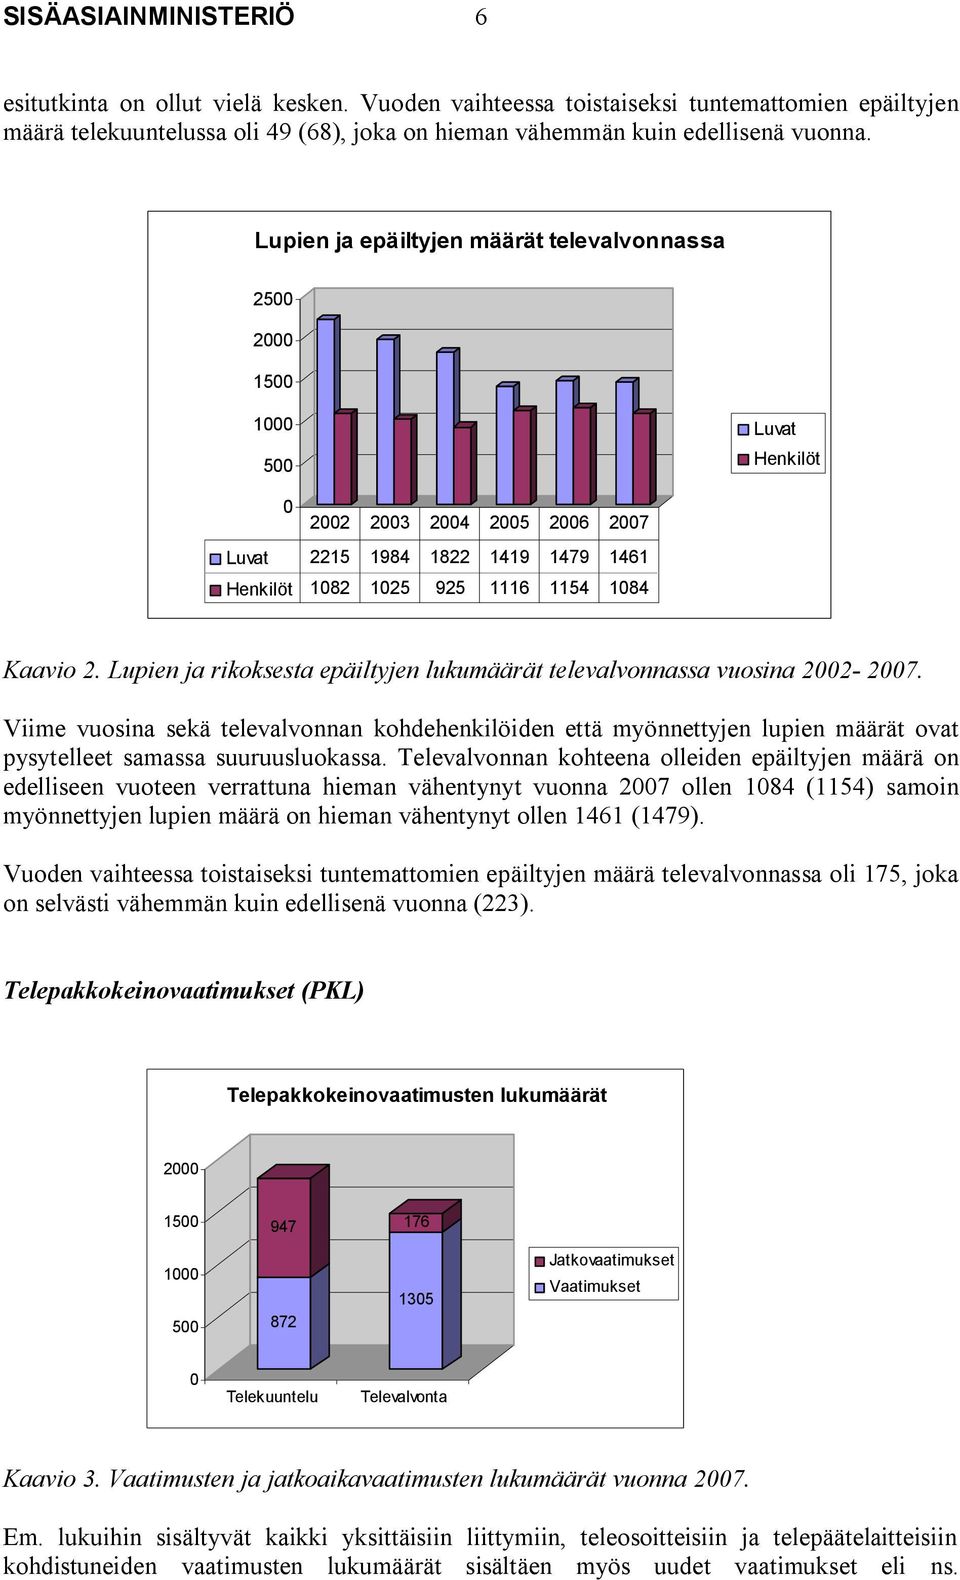 Lupien ja rikoksesta epäiltyjen lukumäärät televalvonnassa vuosina 2002-2007.